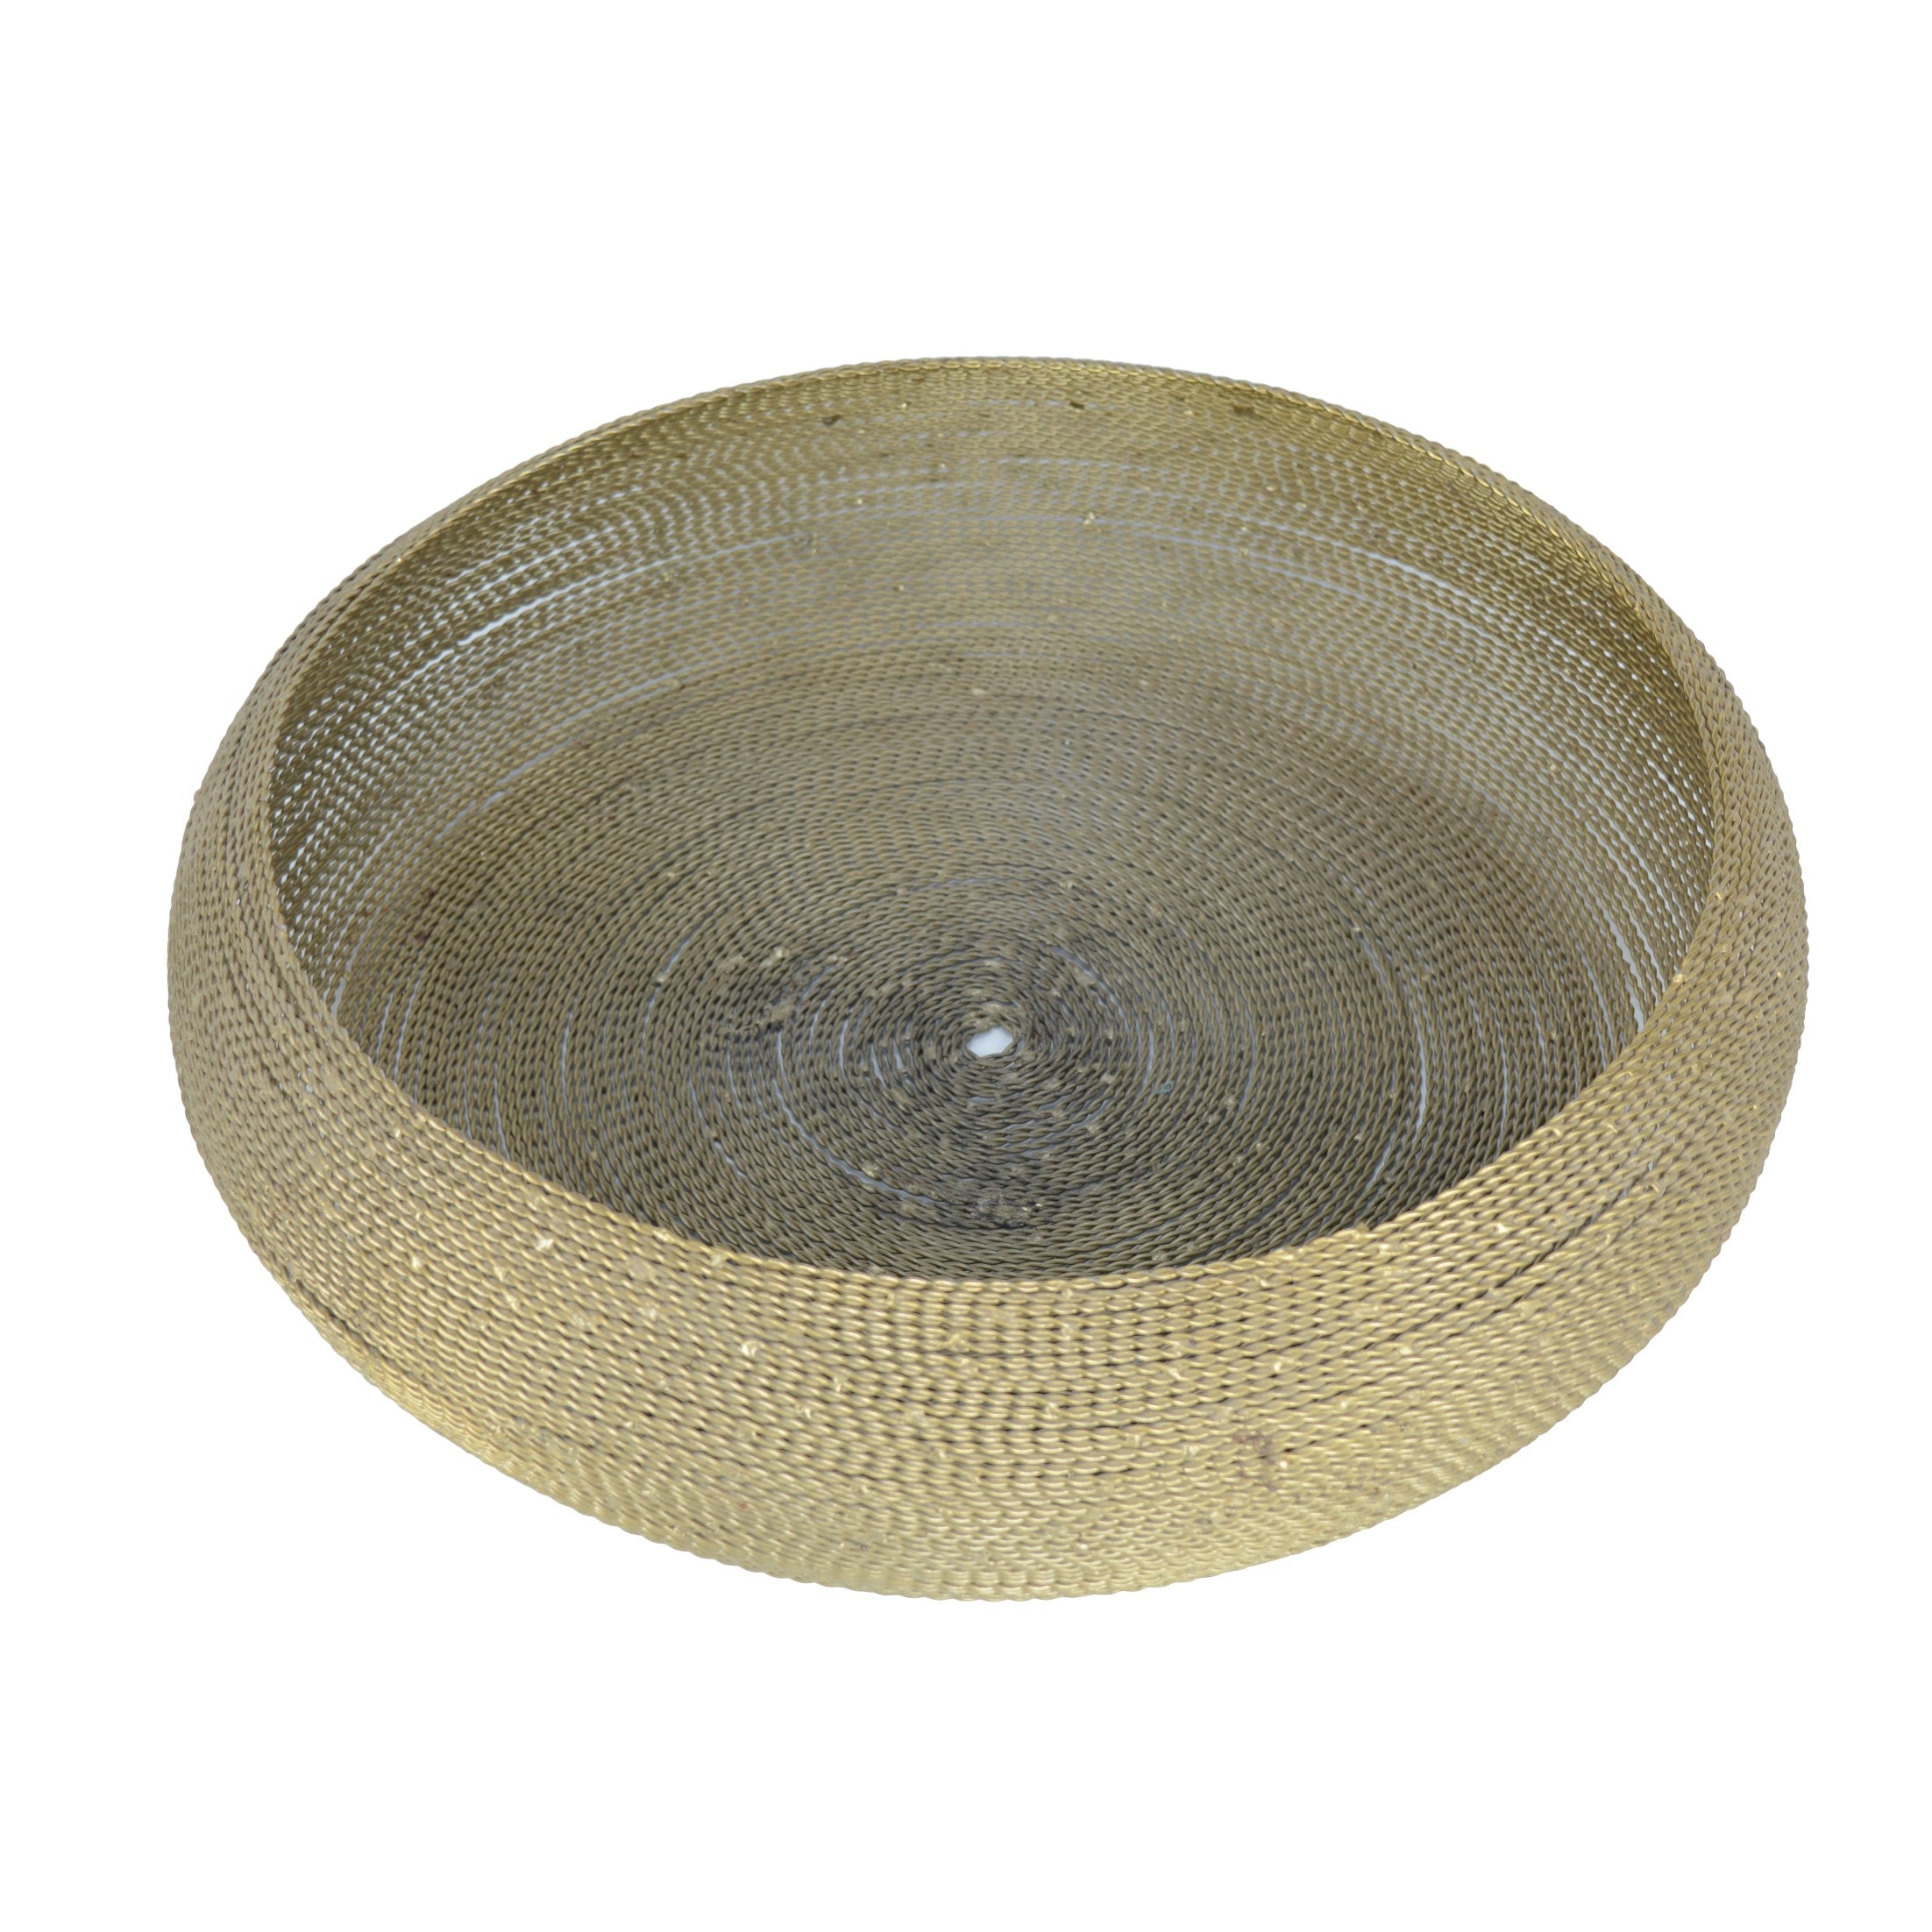 Metallic Round Gold Fruit Basket/Bowl Large